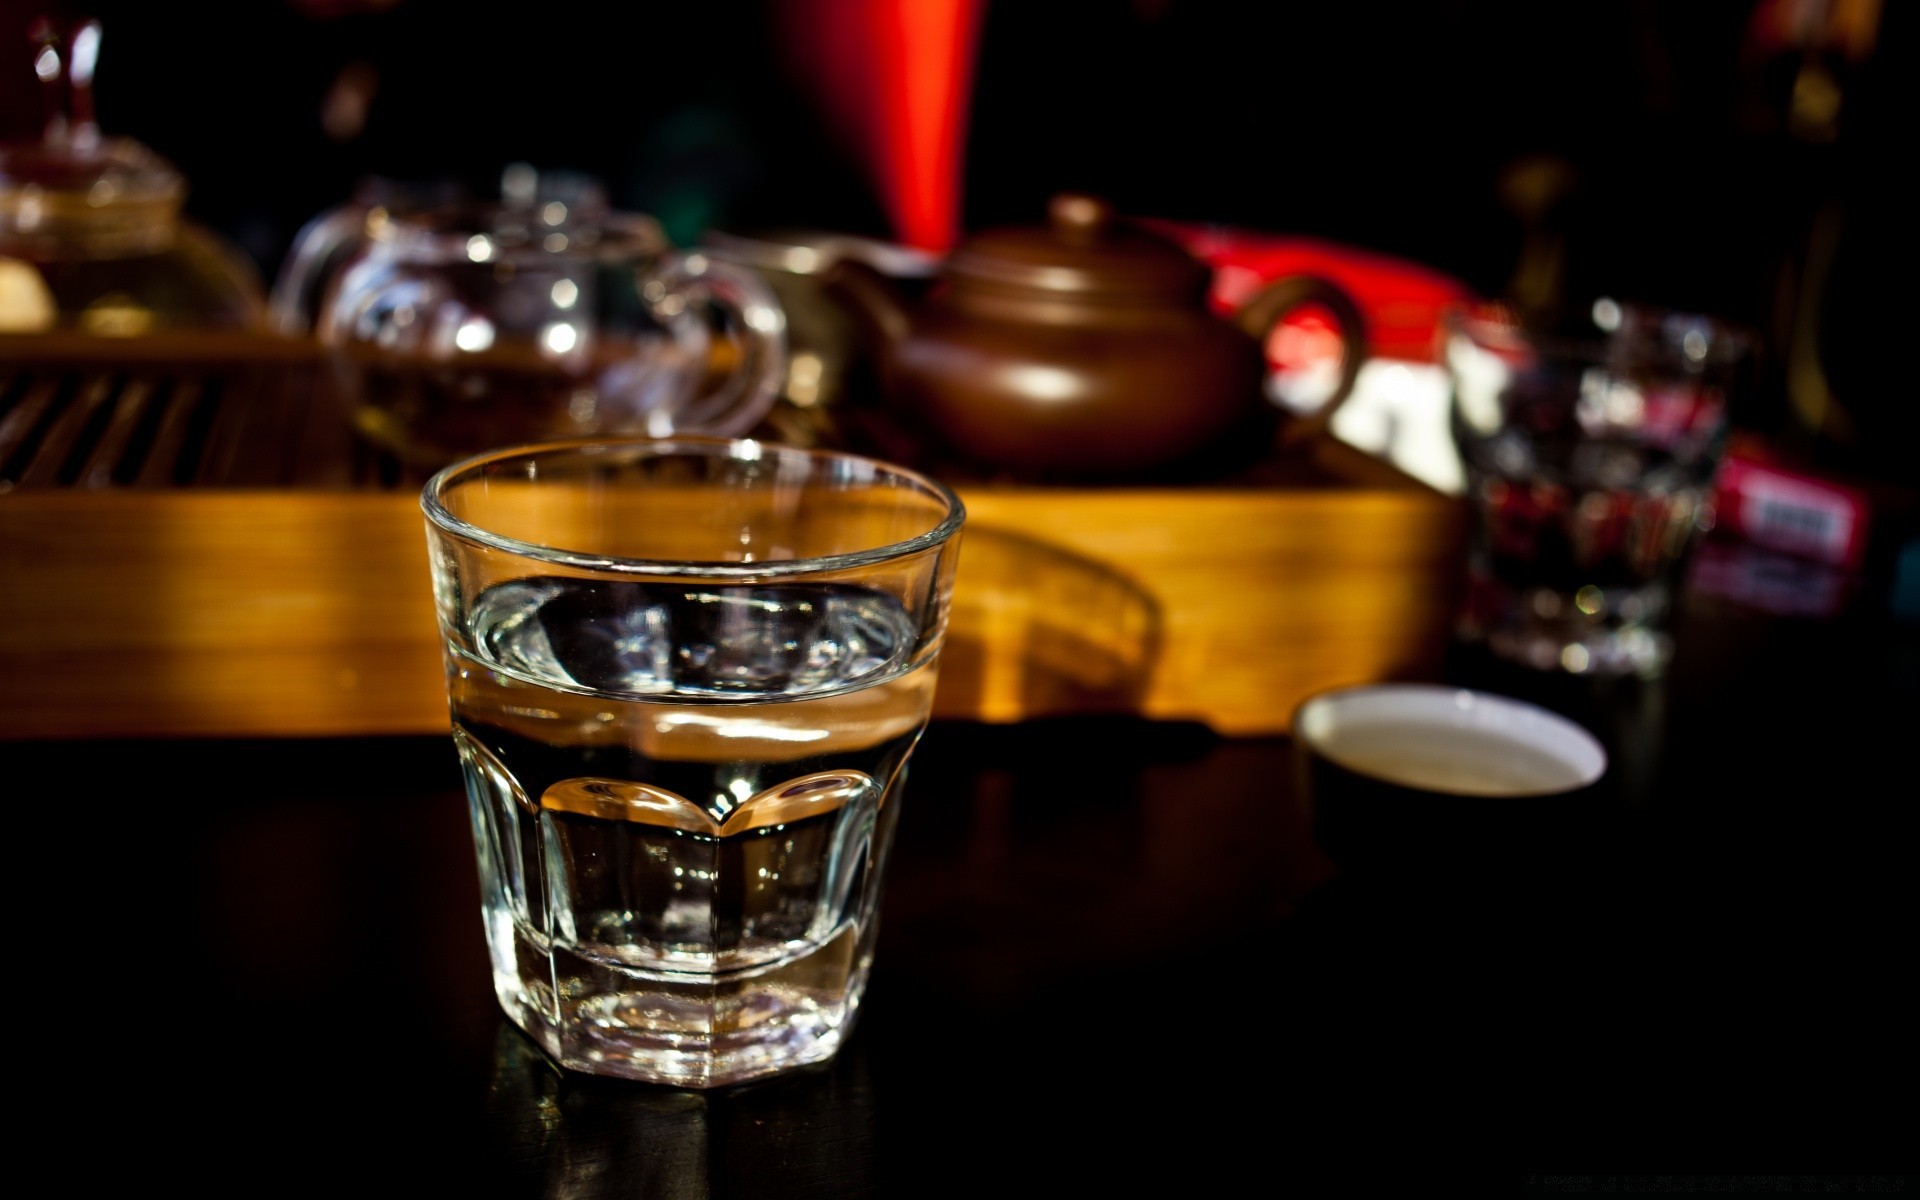 напитки пить бар натюрморт виски таблица вина алкоголь стекло темный участник